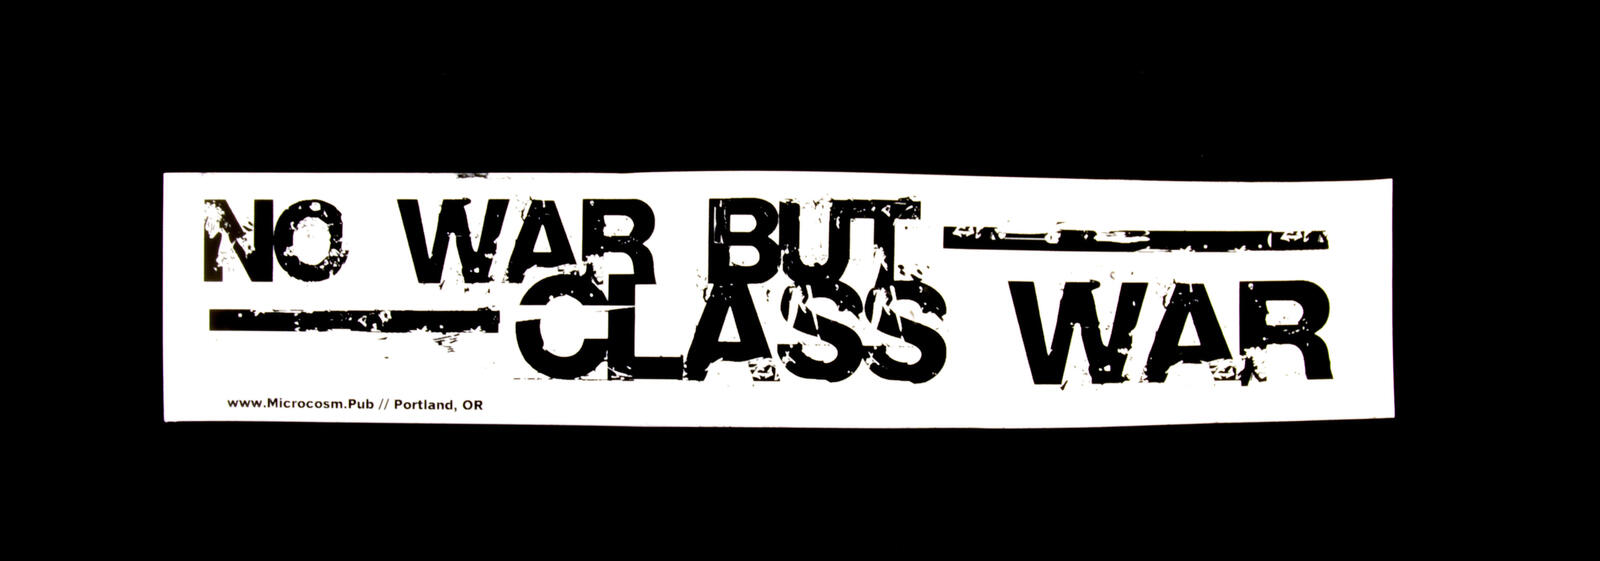 no-war-but-class-war_blowup.jpg